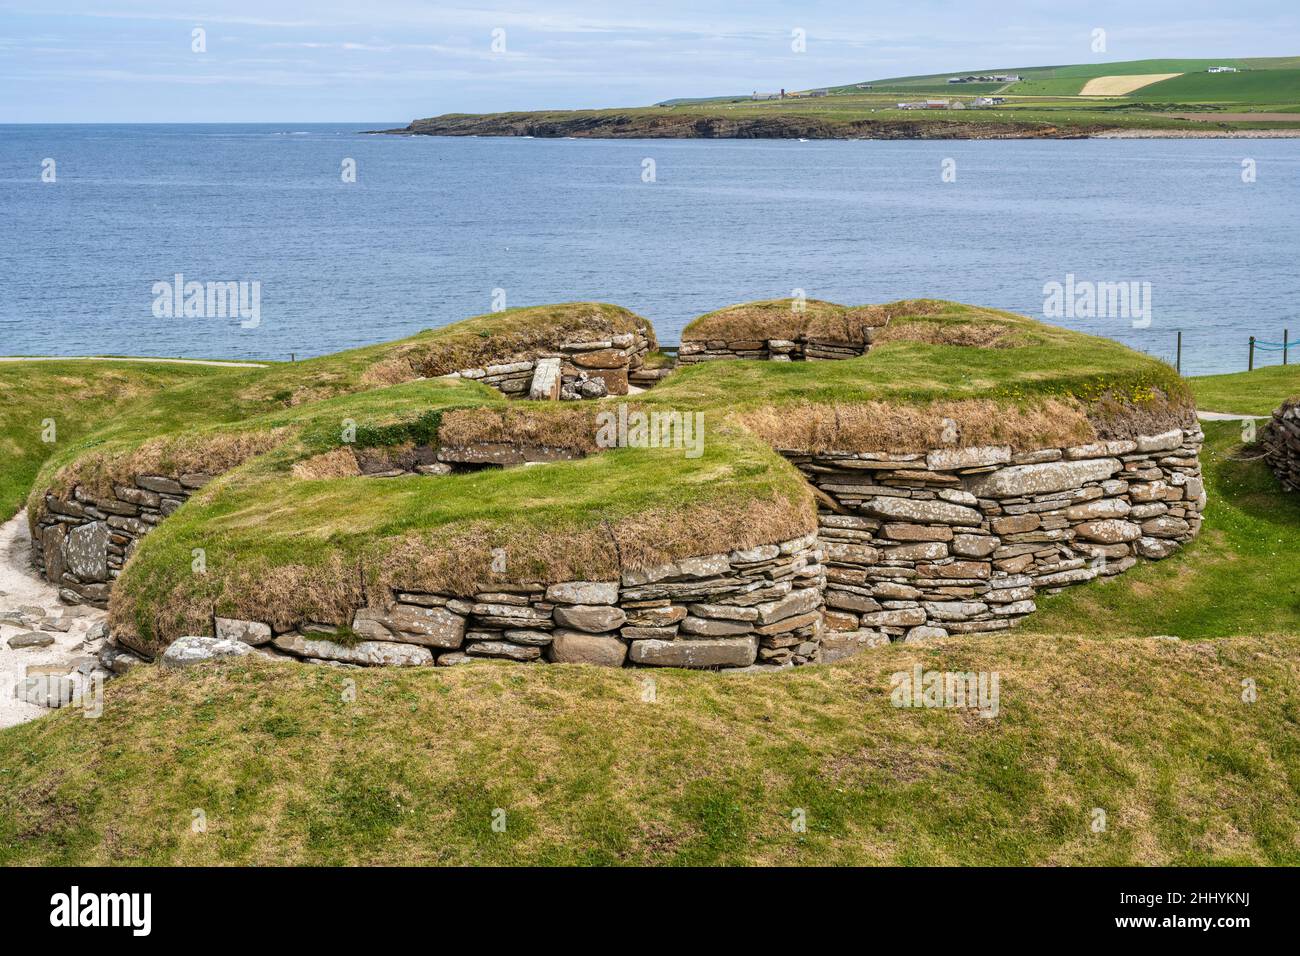 Village néolithique de Skara Brae à côté de la baie de Skaill près de Sandwick sur le continent Orkney en Écosse Banque D'Images